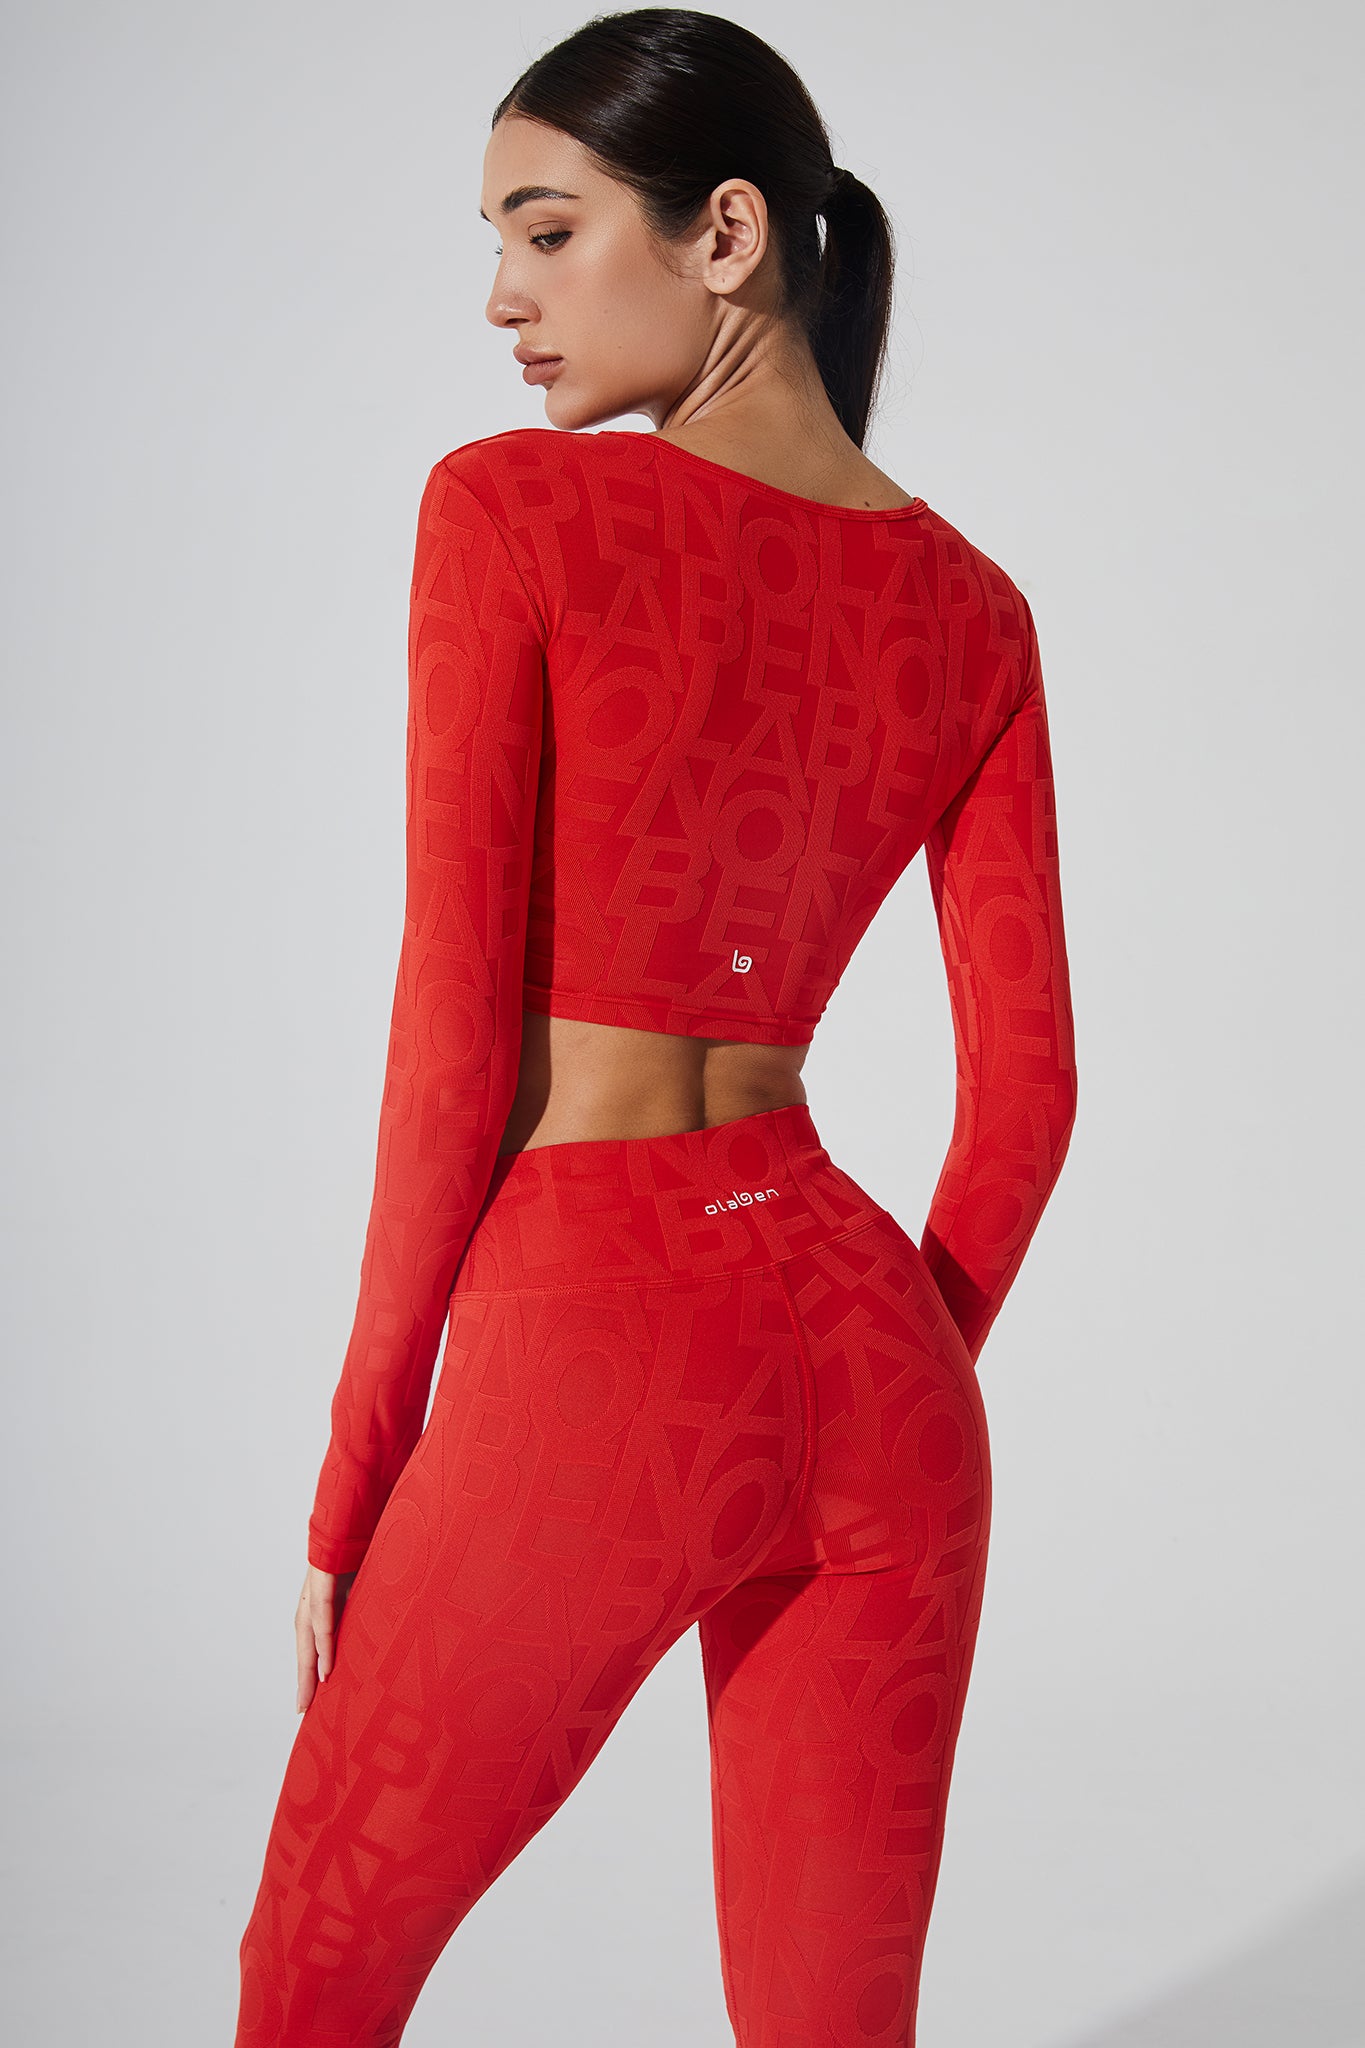 A haute red women's 3D bra featuring the Deese Fleur brand.